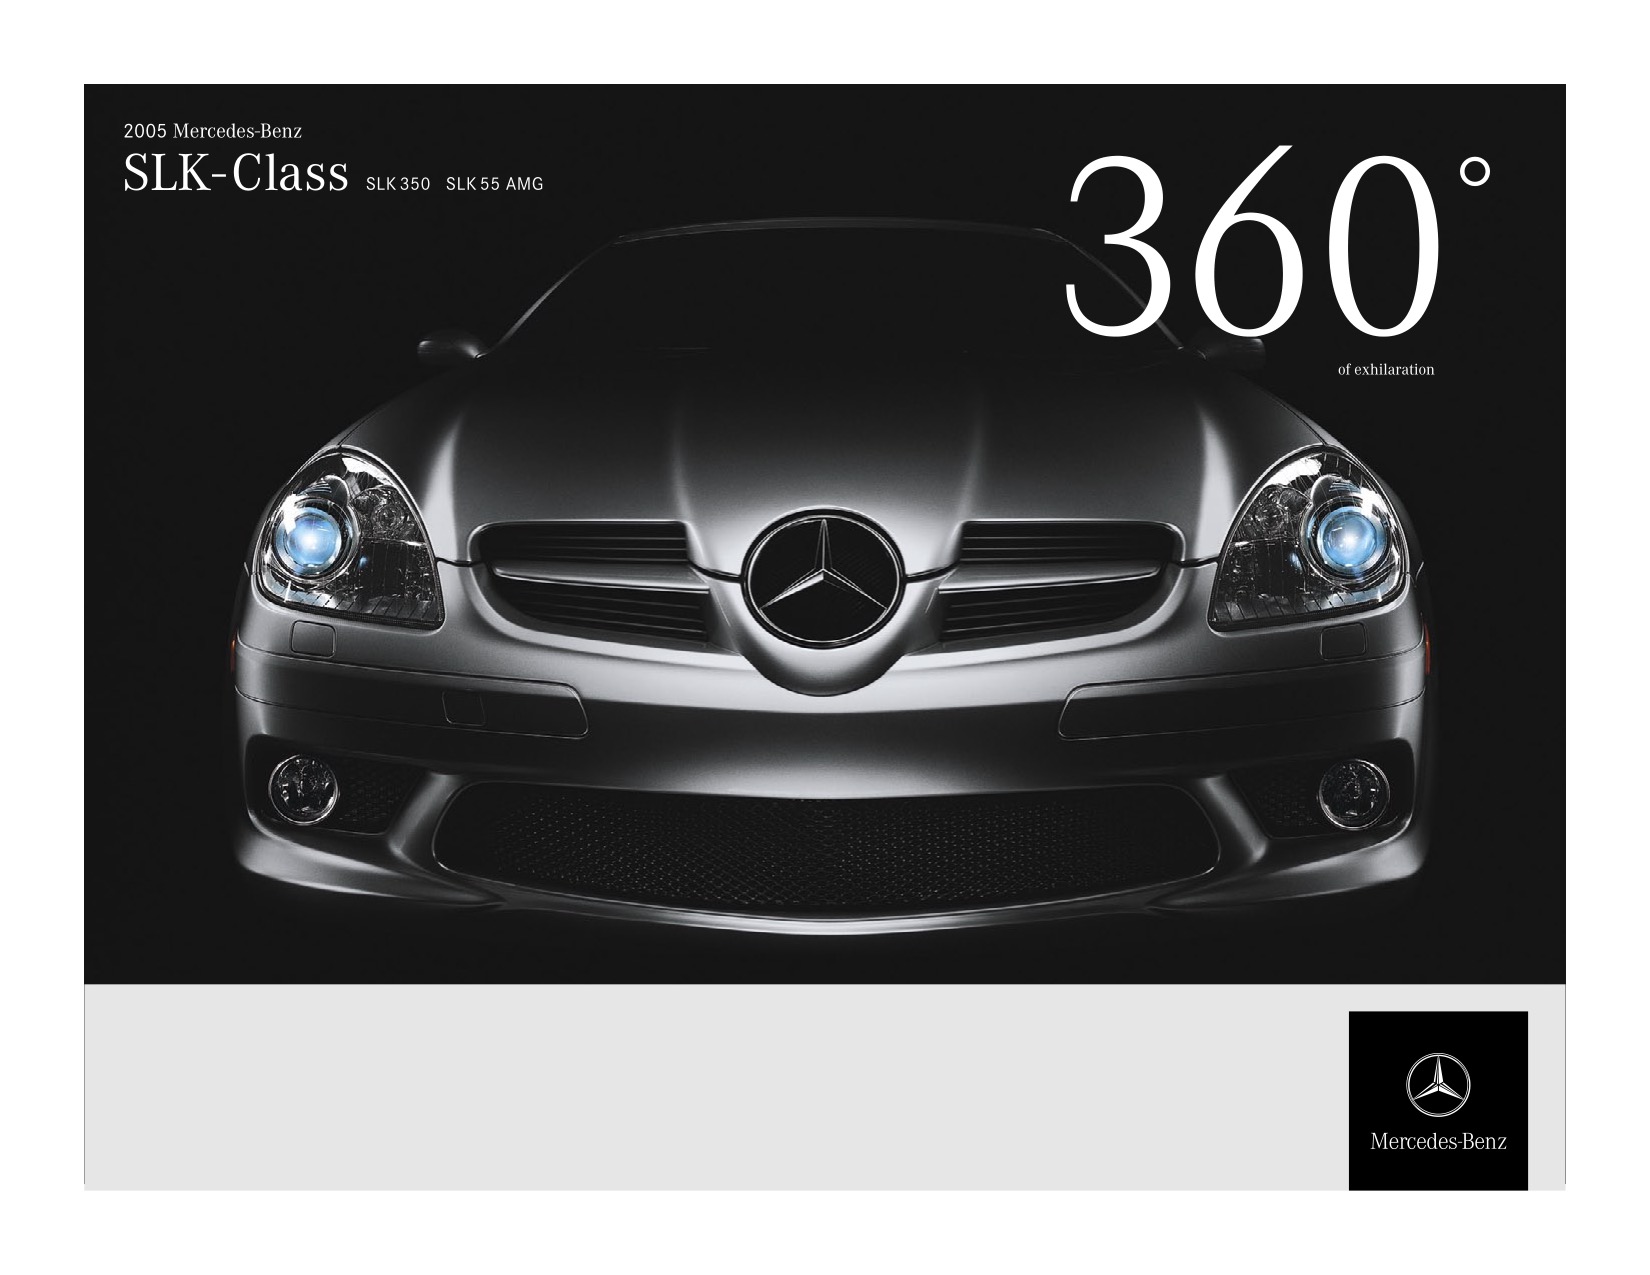 2005 Mercedes-Benz SLK-Class Brochure